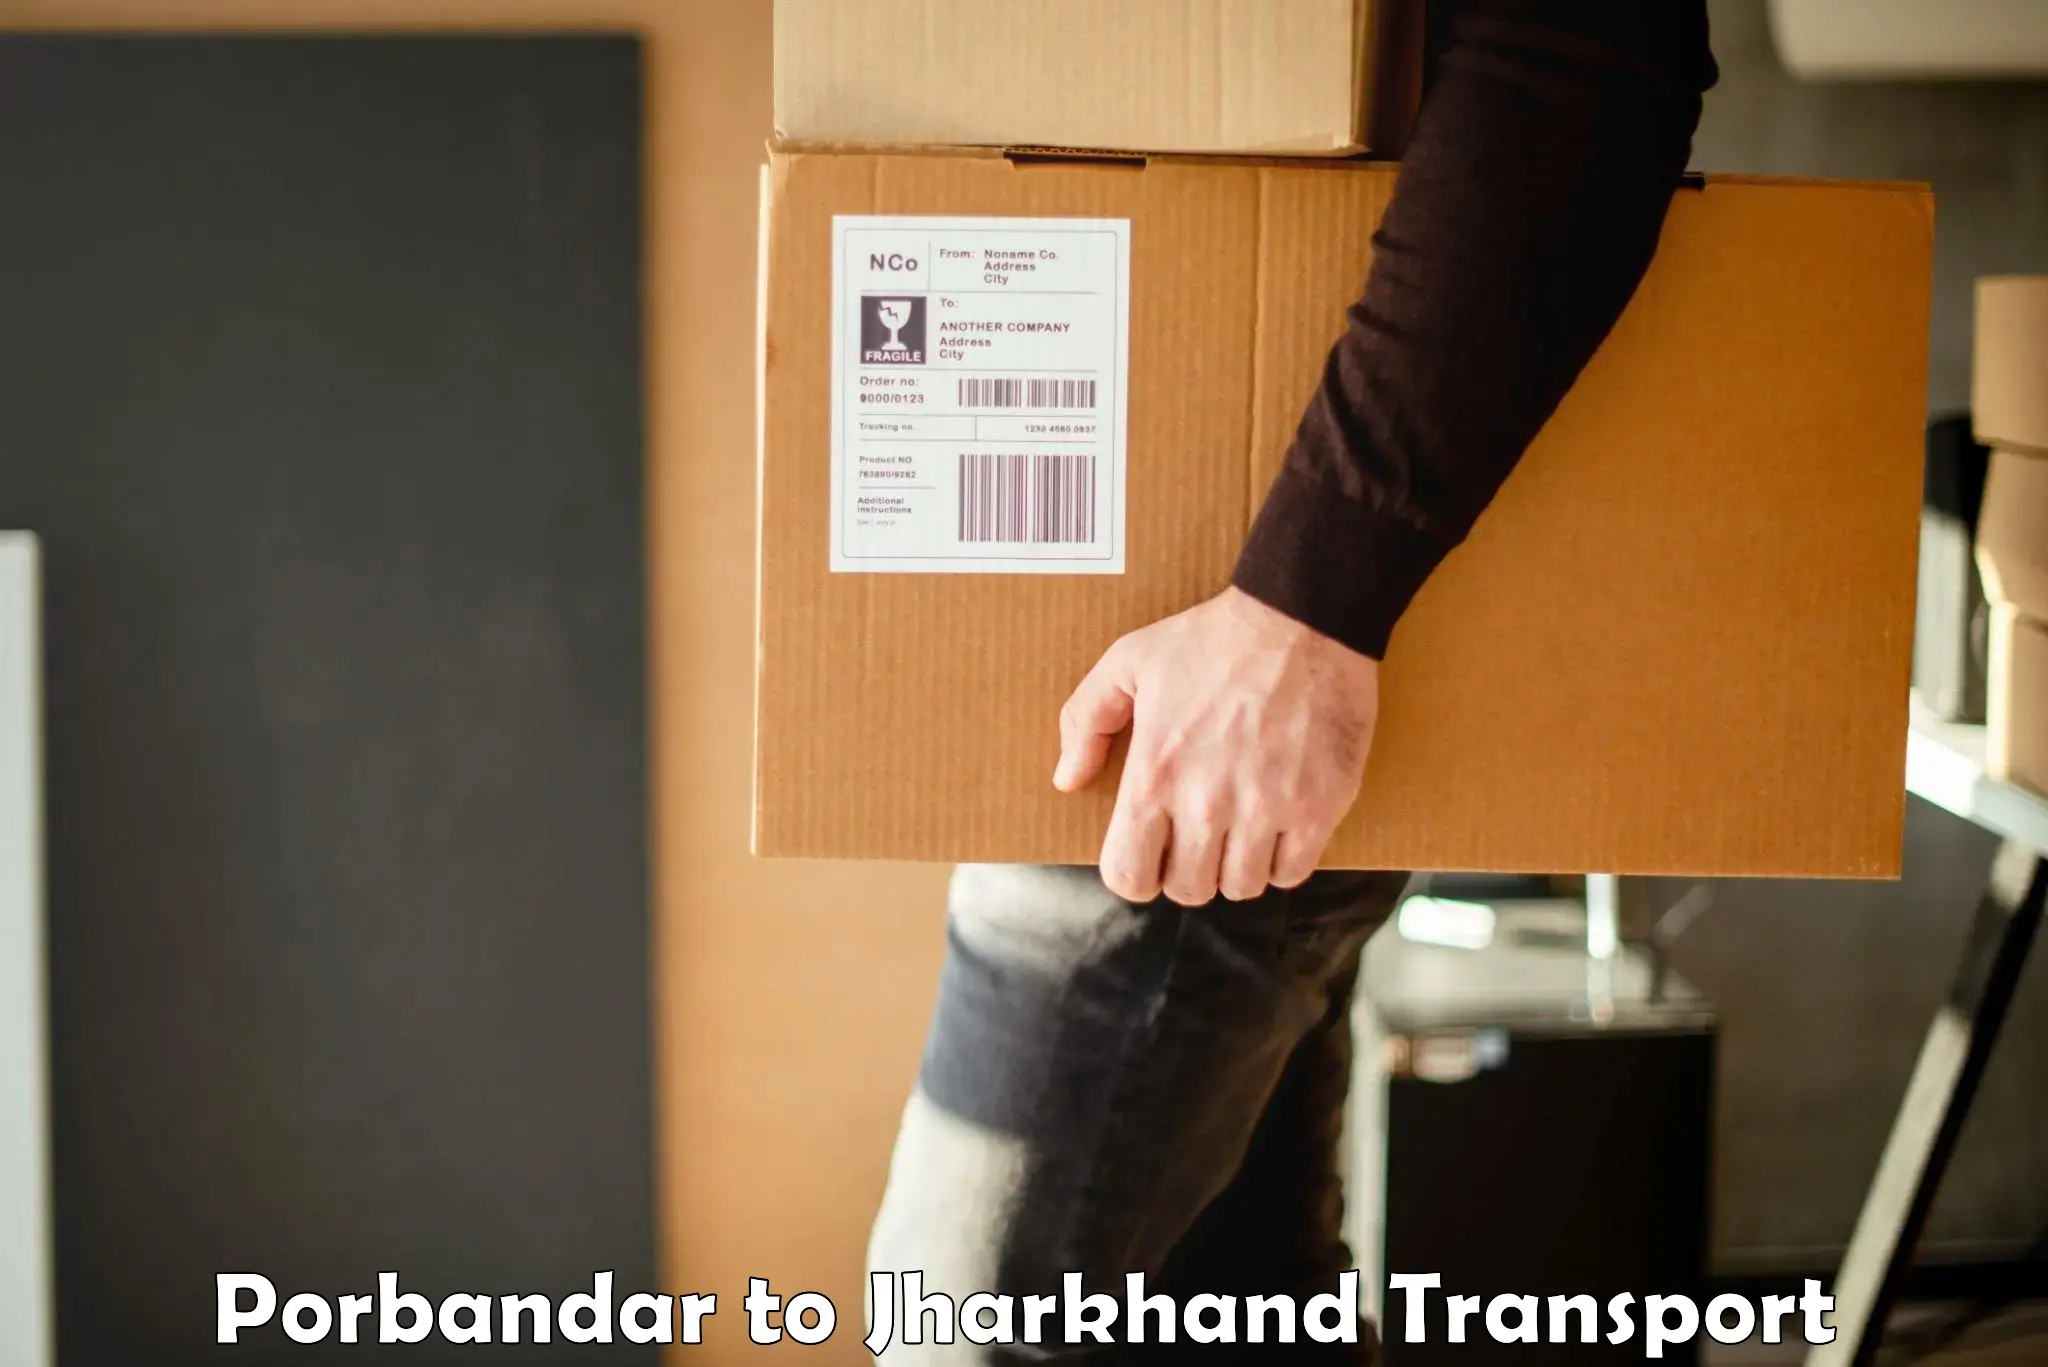 Furniture transport service Porbandar to Medininagar